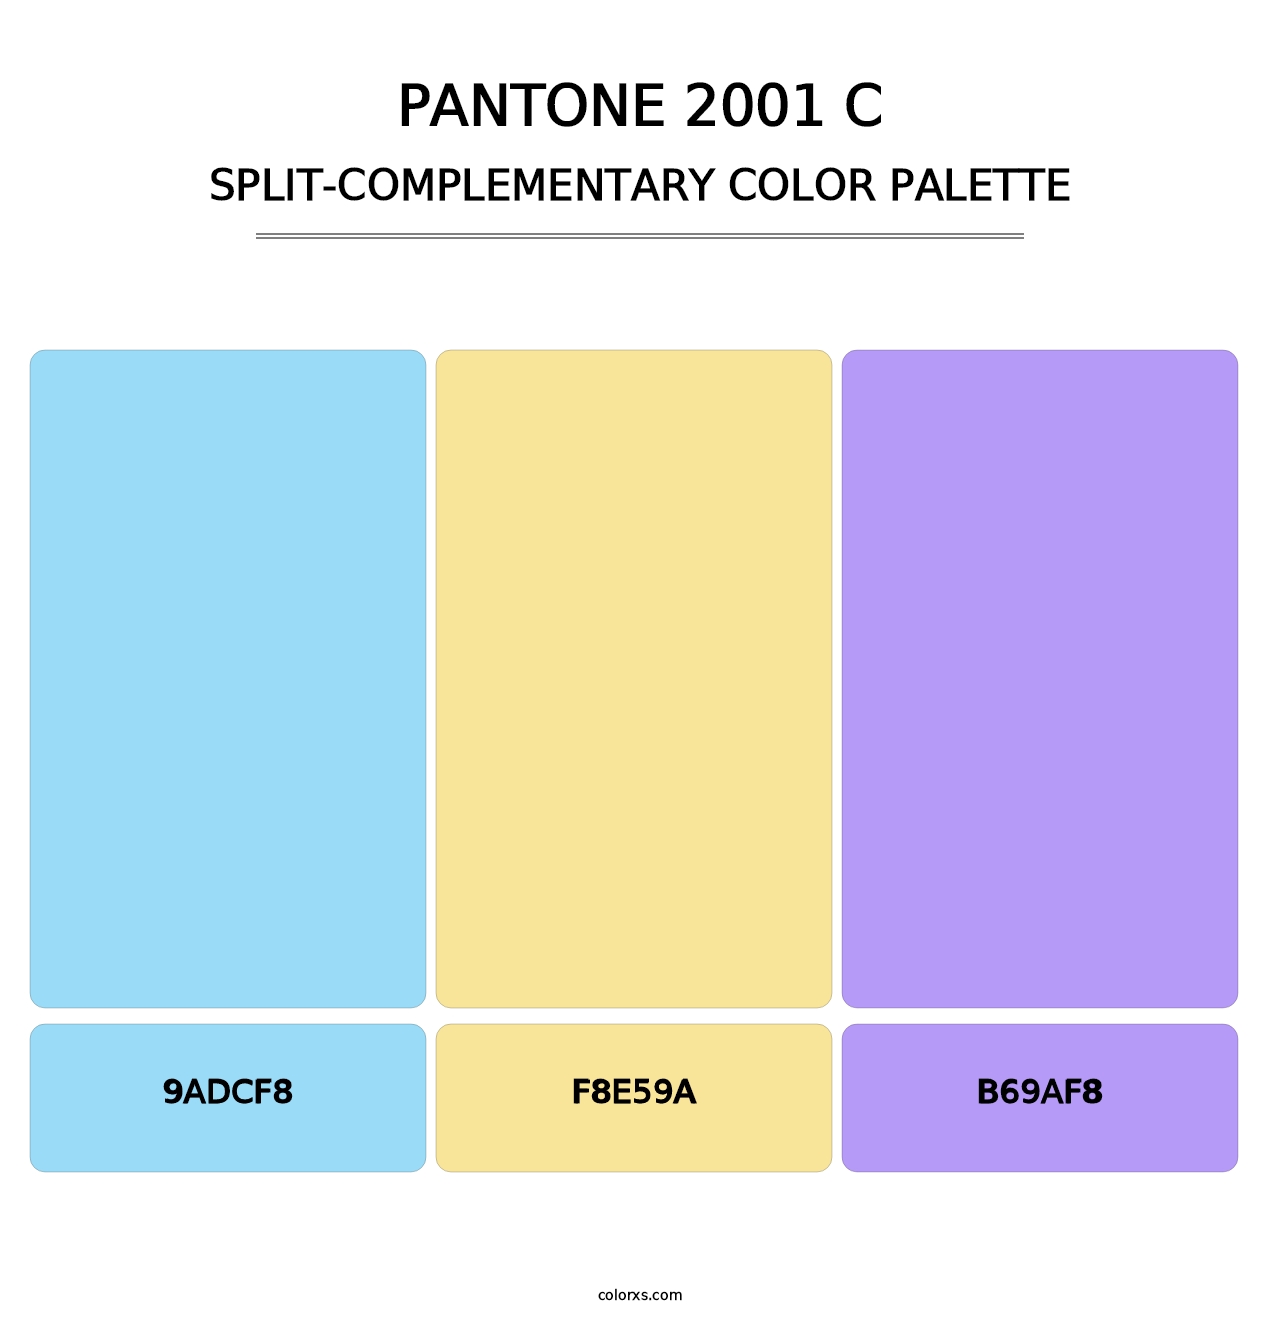 PANTONE 2001 C - Split-Complementary Color Palette